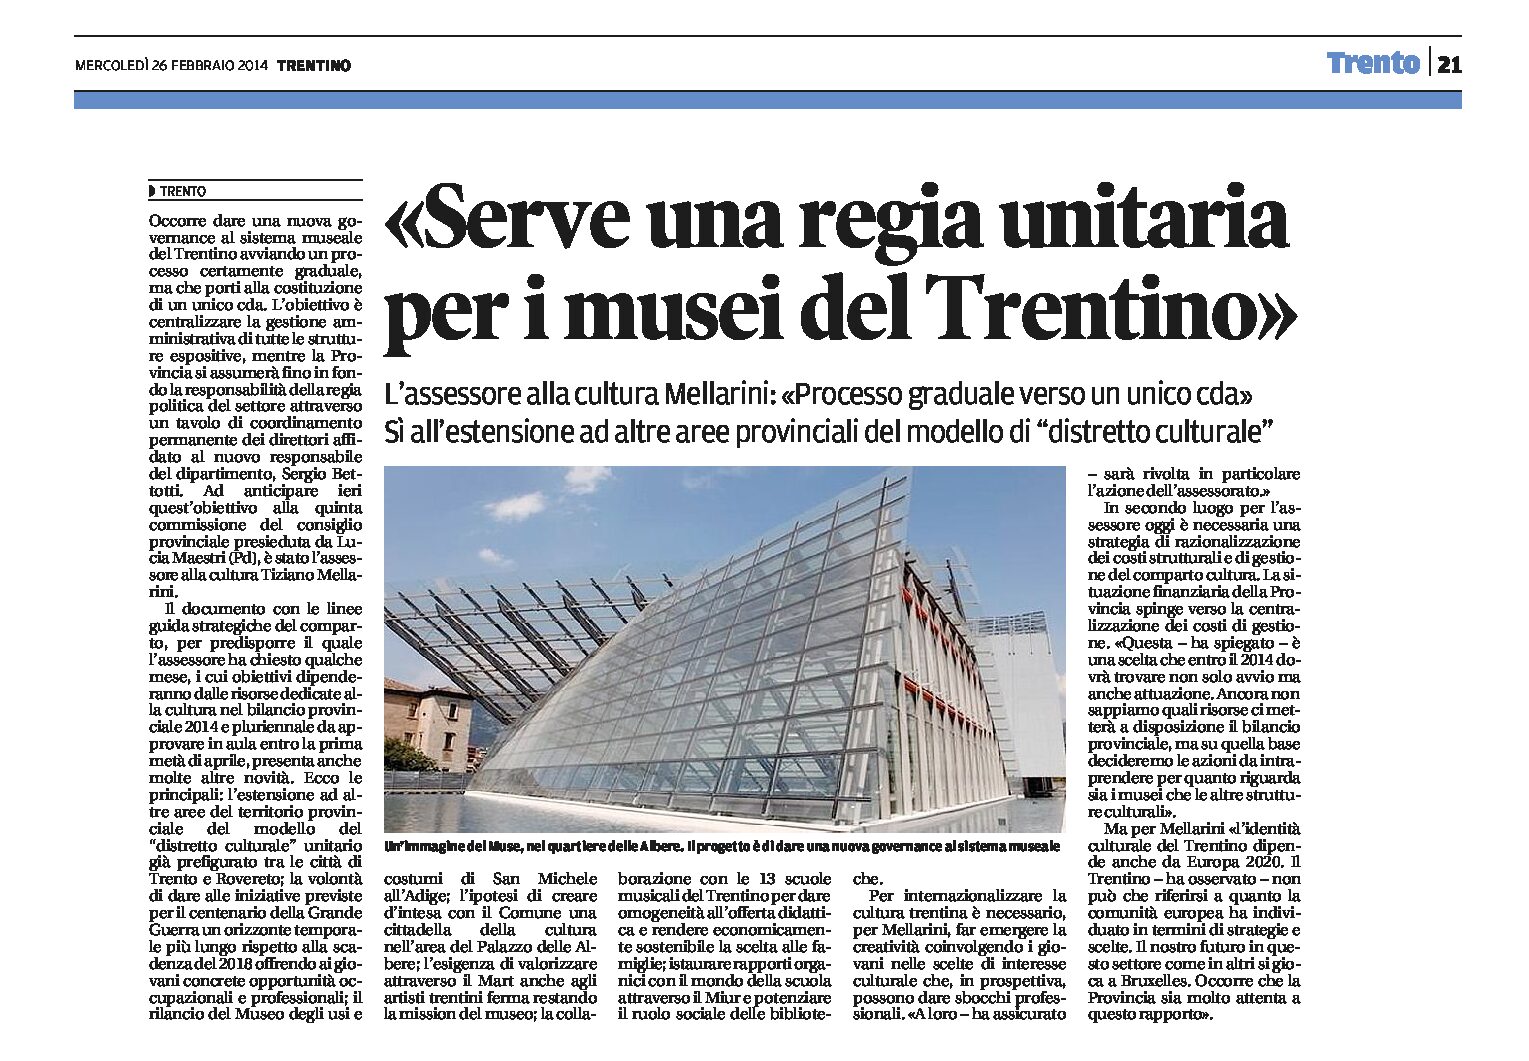 Serve una regia unitaria per i musei del Trentino